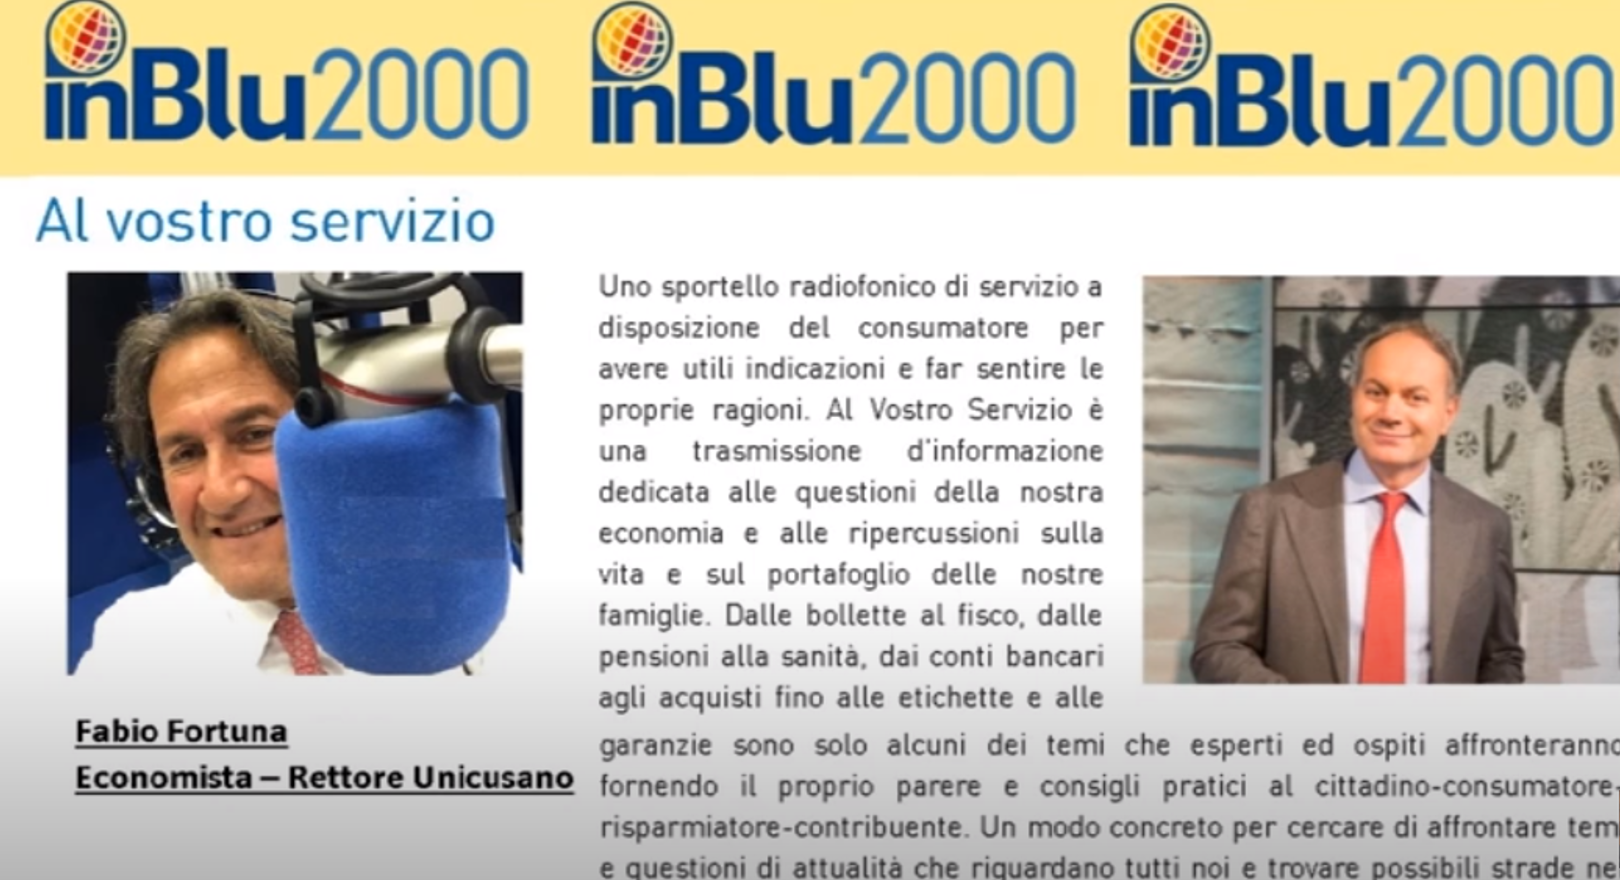 Fabio Fortuna ad Al vostro Servizio Nuovo record del prezzo della benzina di inBlu2000